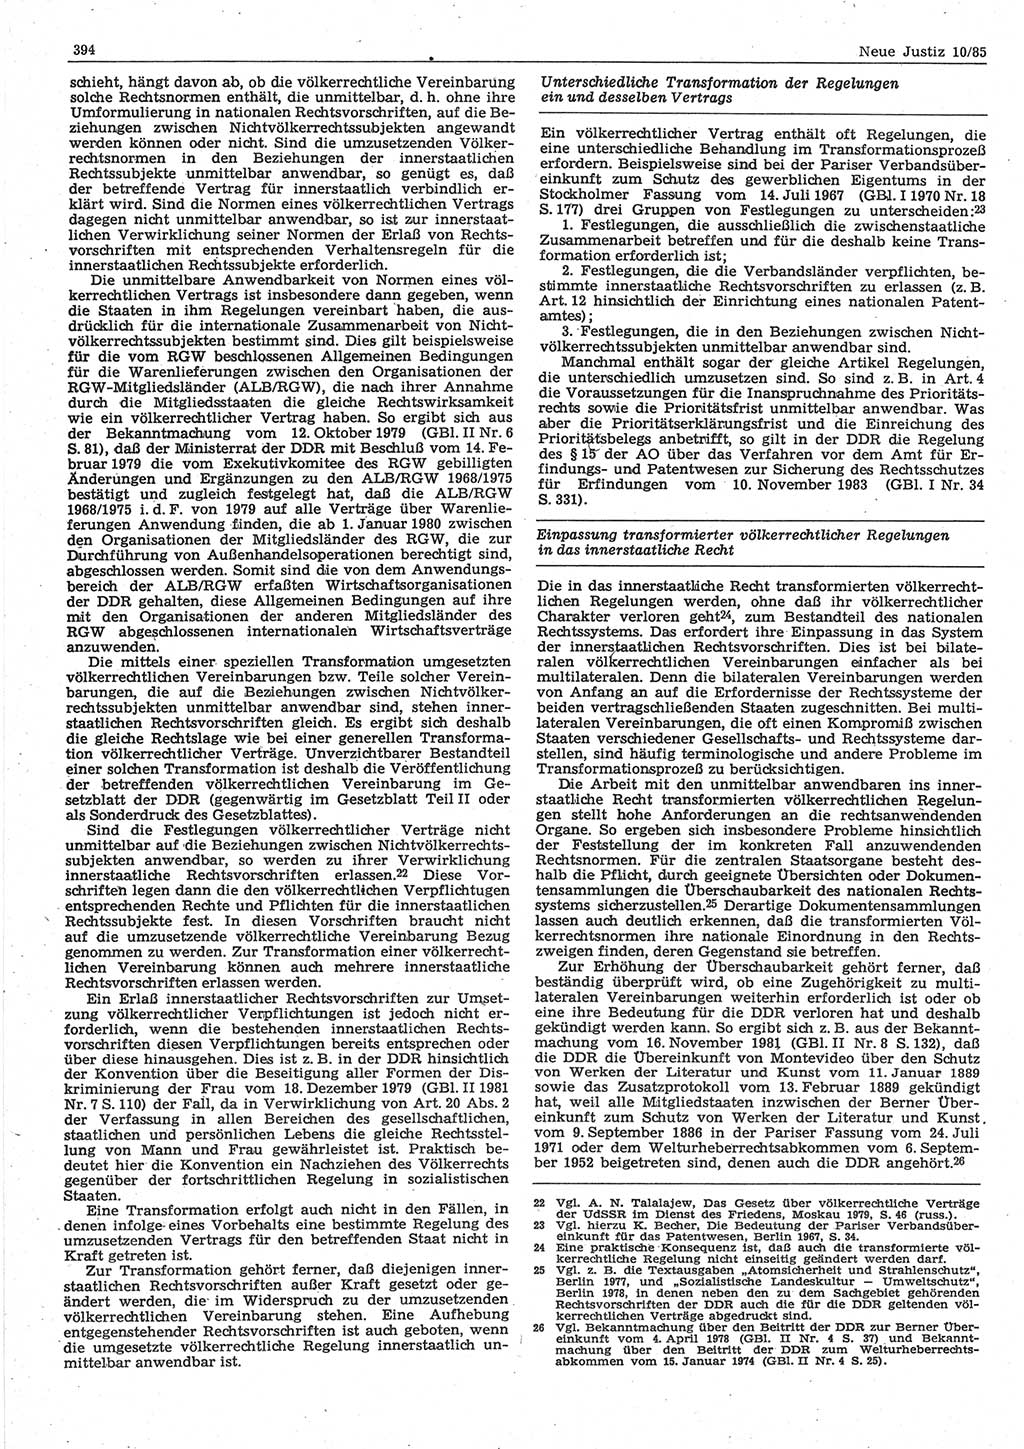 Neue Justiz (NJ), Zeitschrift für sozialistisches Recht und Gesetzlichkeit [Deutsche Demokratische Republik (DDR)], 39. Jahrgang 1985, Seite 394 (NJ DDR 1985, S. 394)